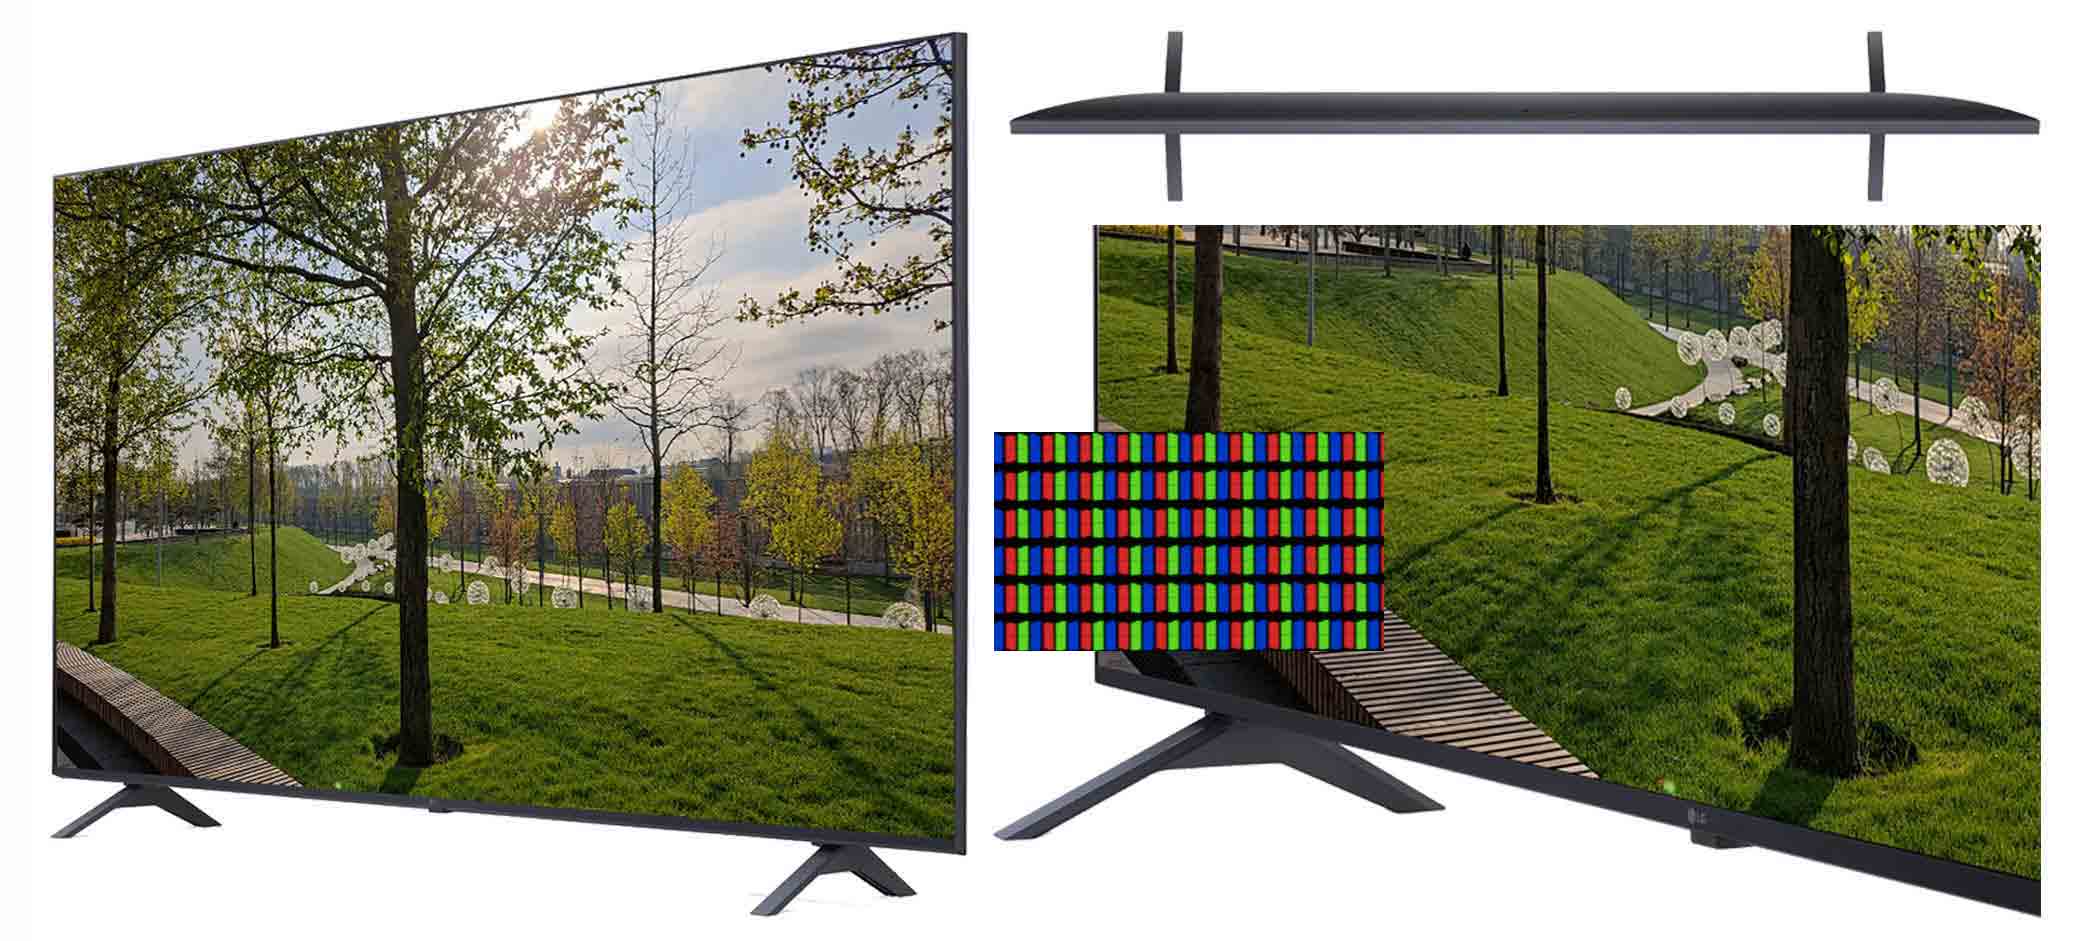 Сравнительный обзор телевизоров lg за 2000 год: топ моделей